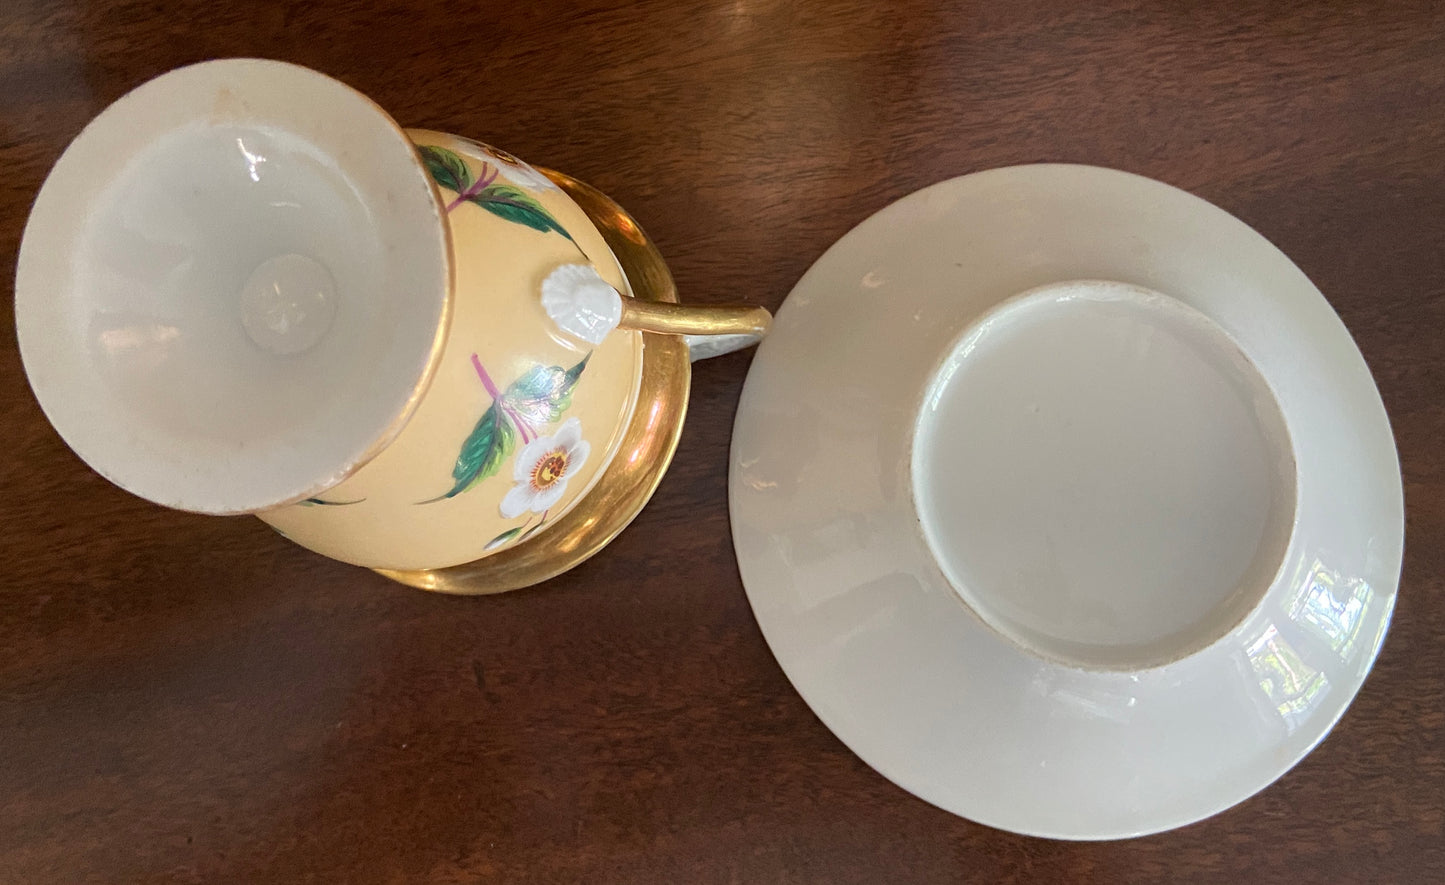 Antique Old Paris Porcelain Cup & Saucer